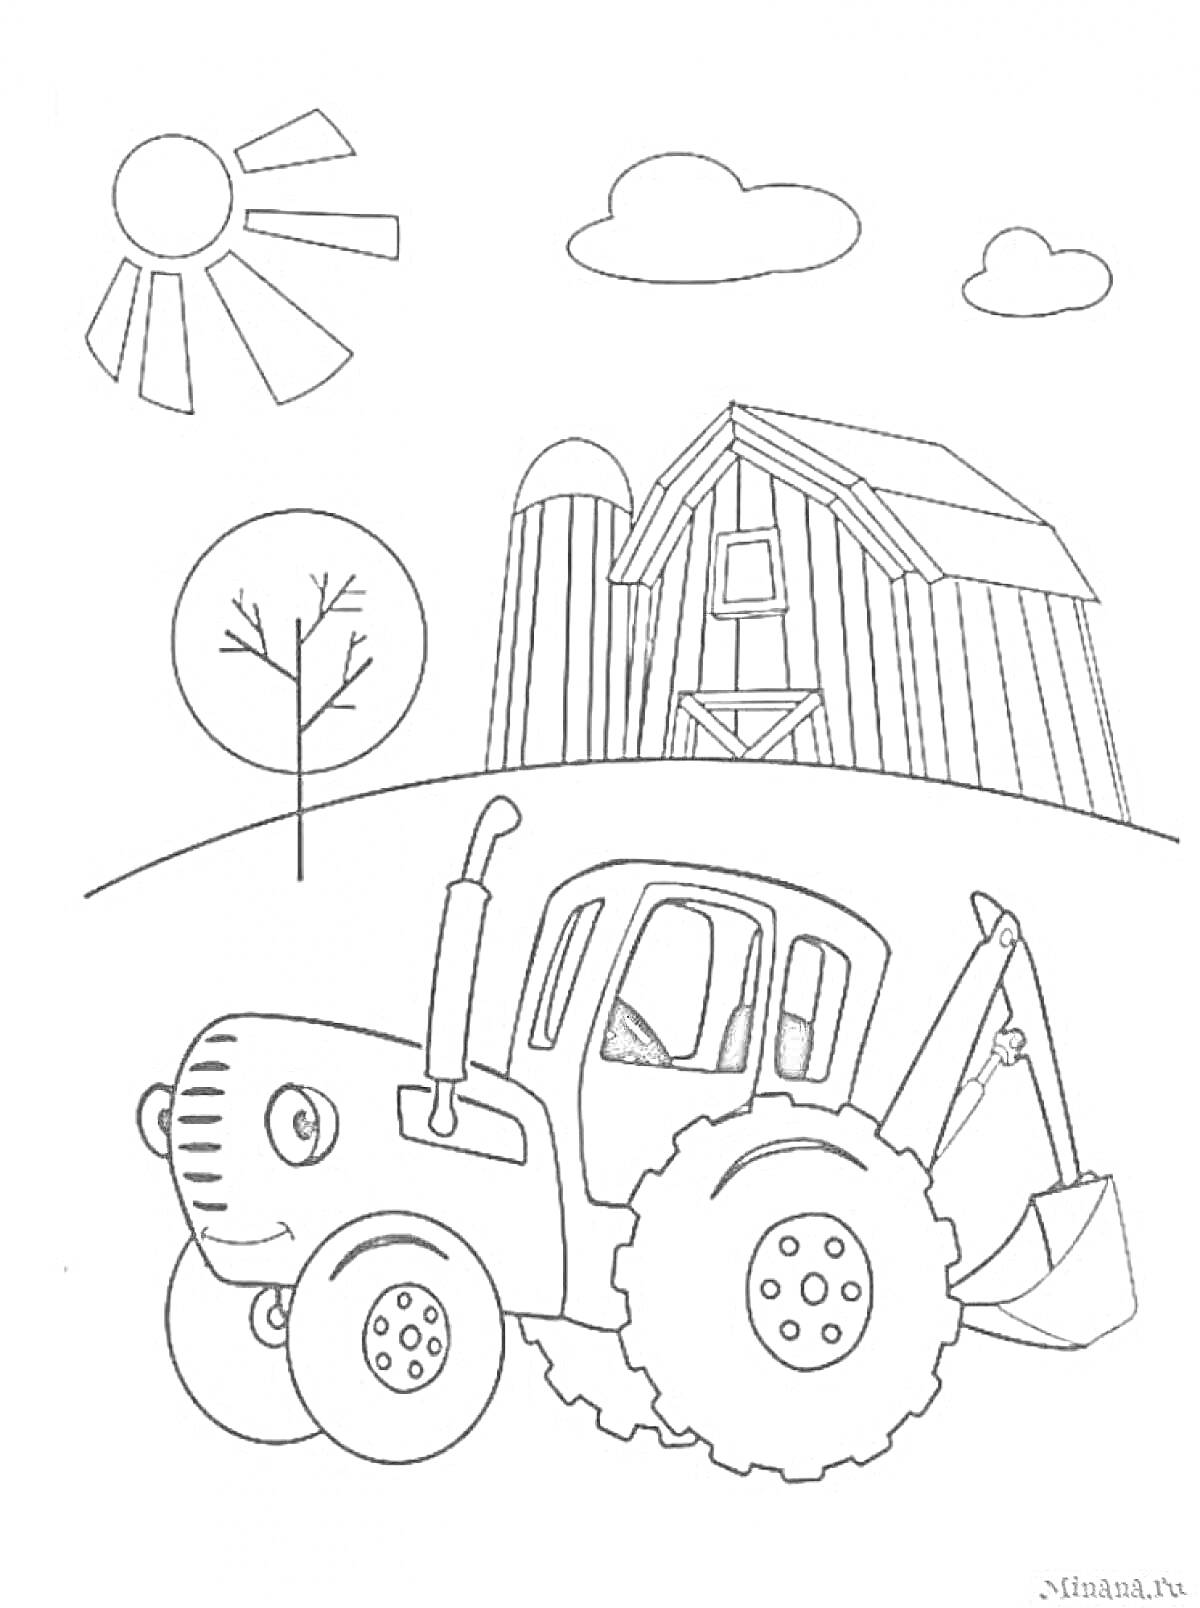 Раскраска синий трактор, солнце, облака, дерево, сарай на ферме